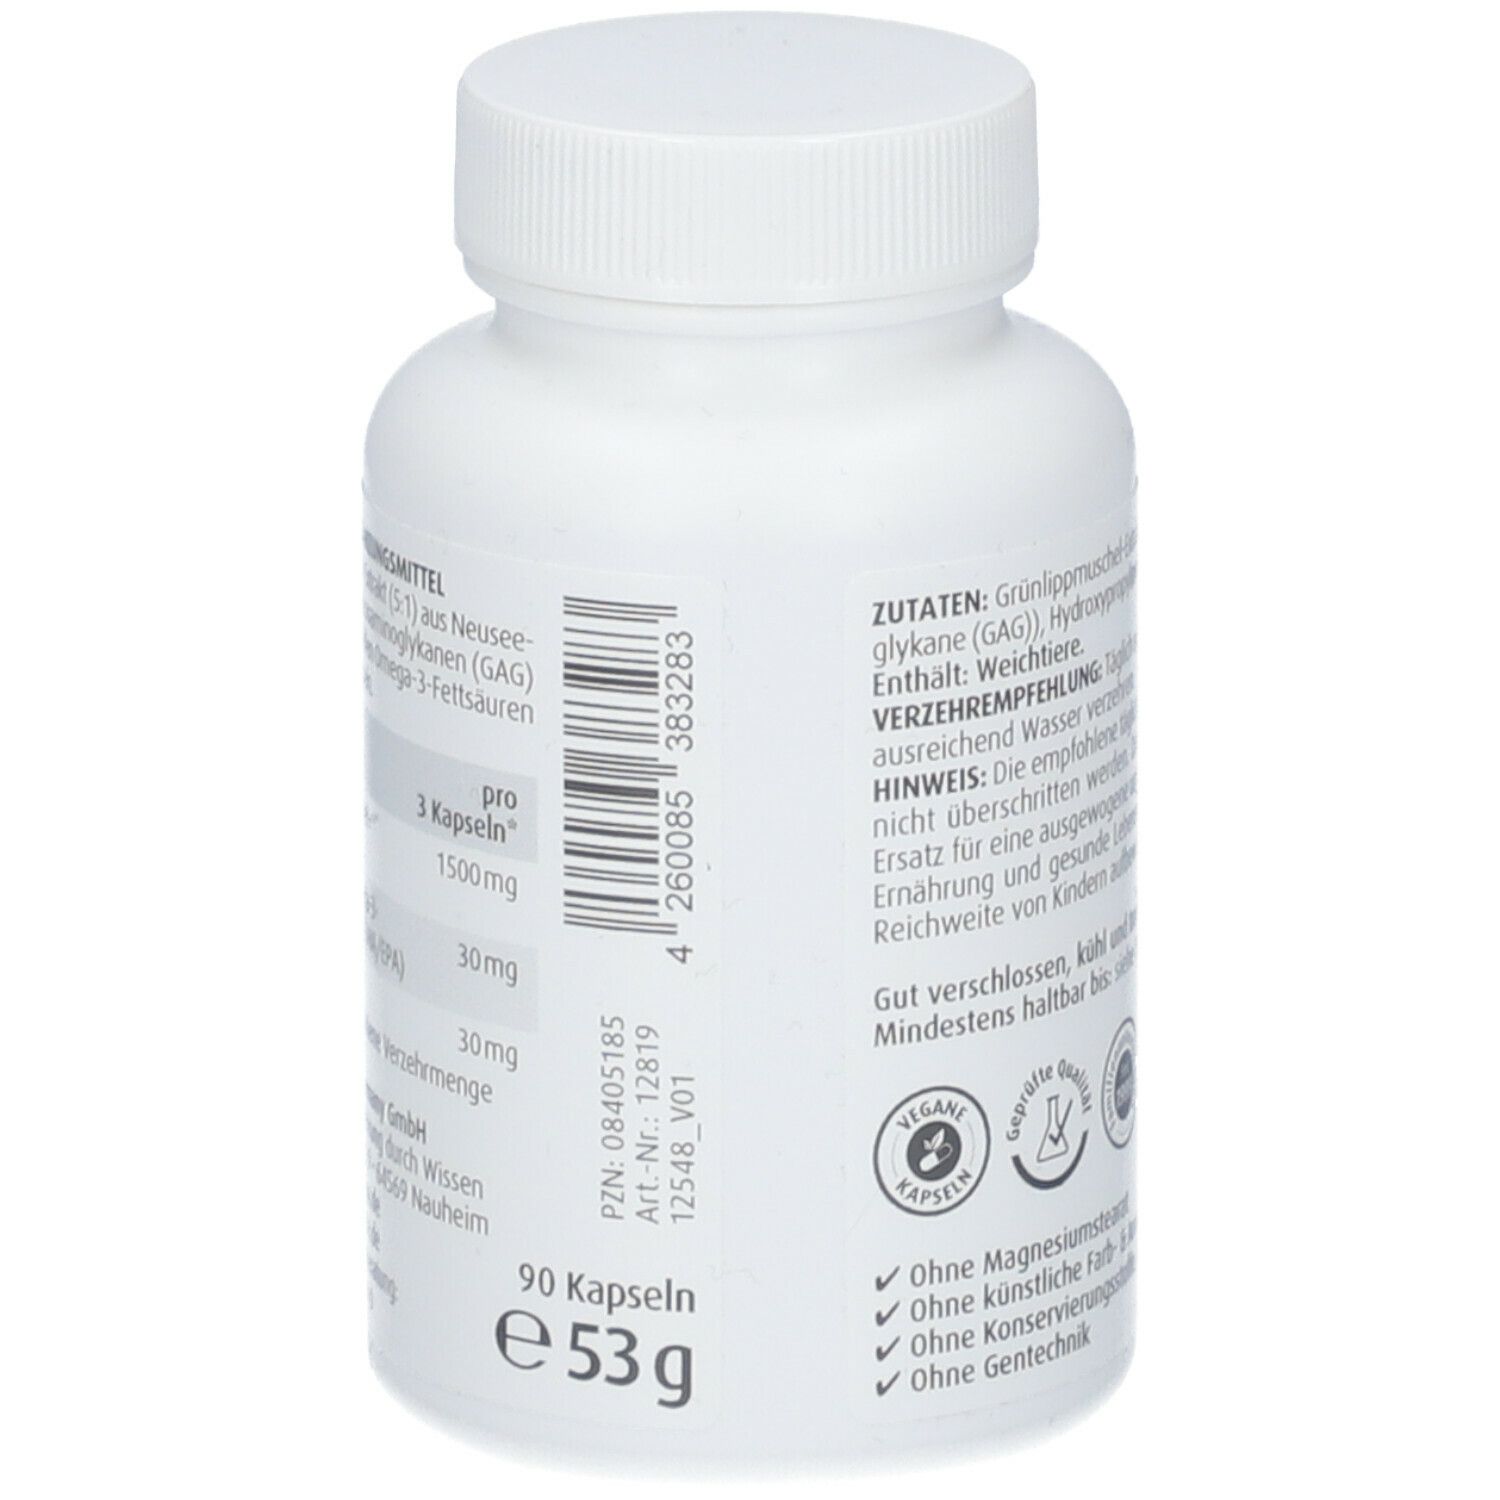 ZeinPharma® Grünlippmuschel Kapseln 500 mg